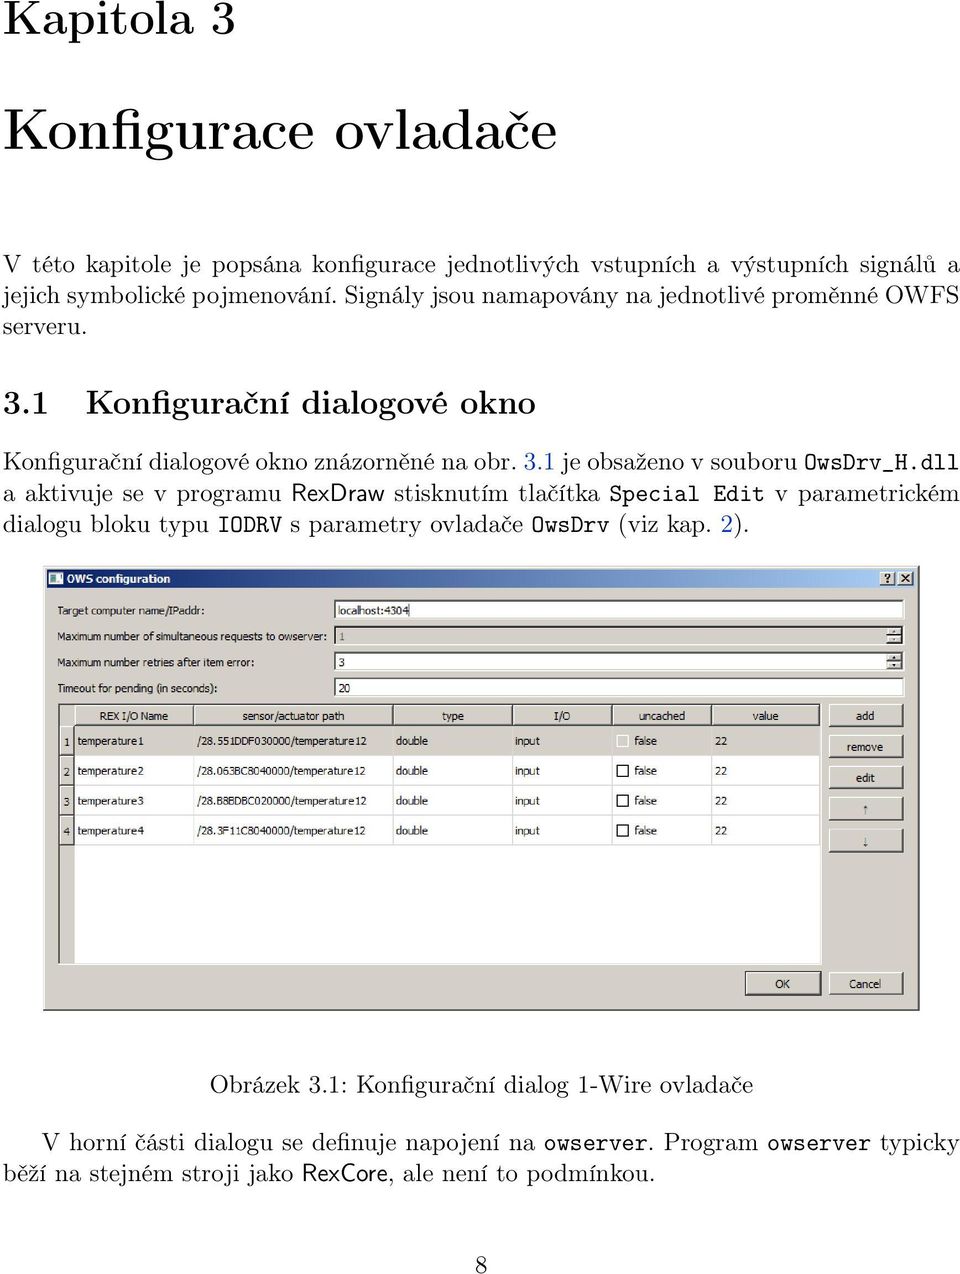 dll a aktivuje se v programu RexDraw stisknutím tlačítka Special Edit v parametrickém dialogu bloku typu IODRV s parametry ovladače OwsDrv (viz kap. 2). Obrázek 3.